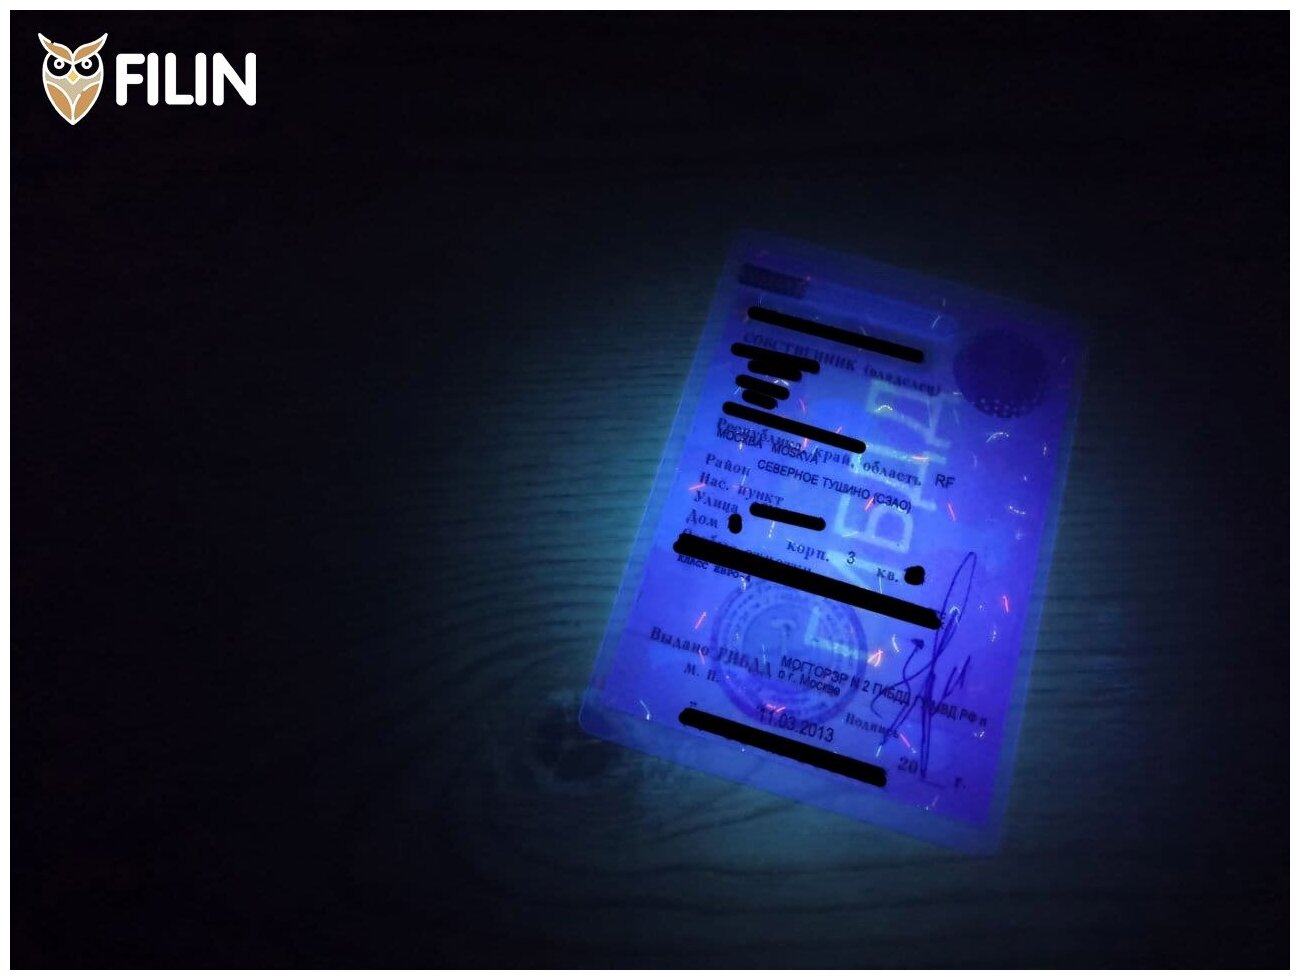 Ультрафиолетовый фонарь Filin P01UV-365 со стеклом Вуда без паразитивной засветки.